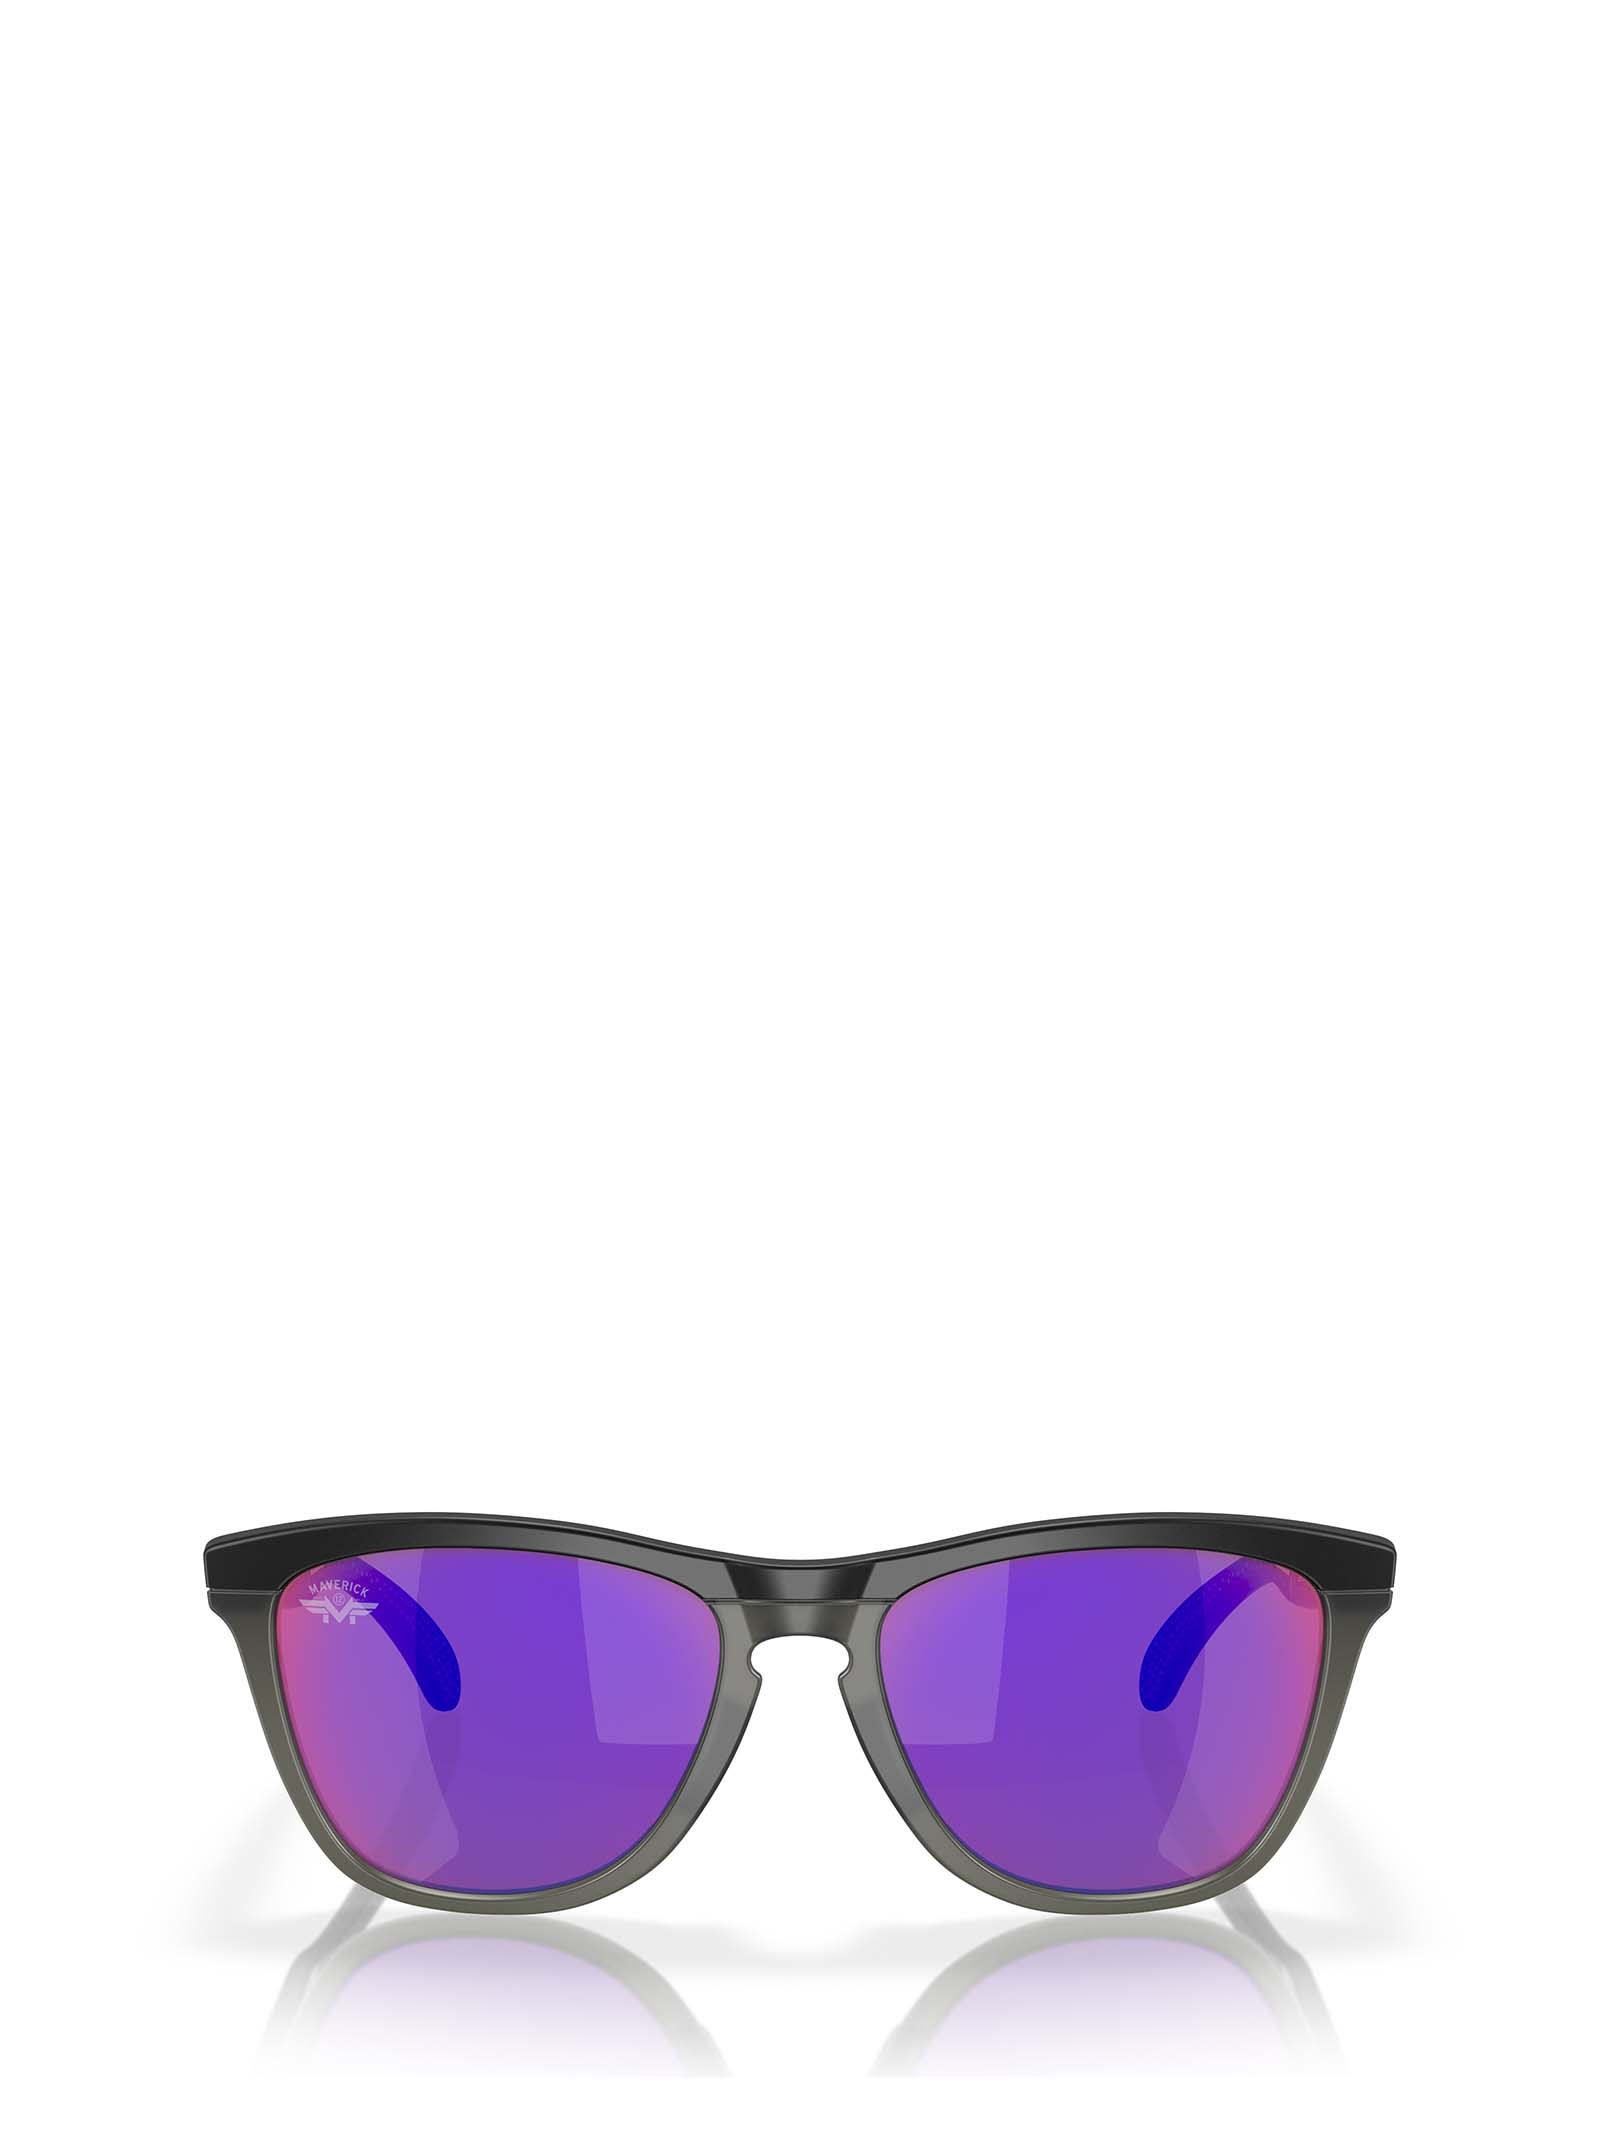 Oakley Oo9284 Matte Black / Matte Grey Smoke Sunglasses